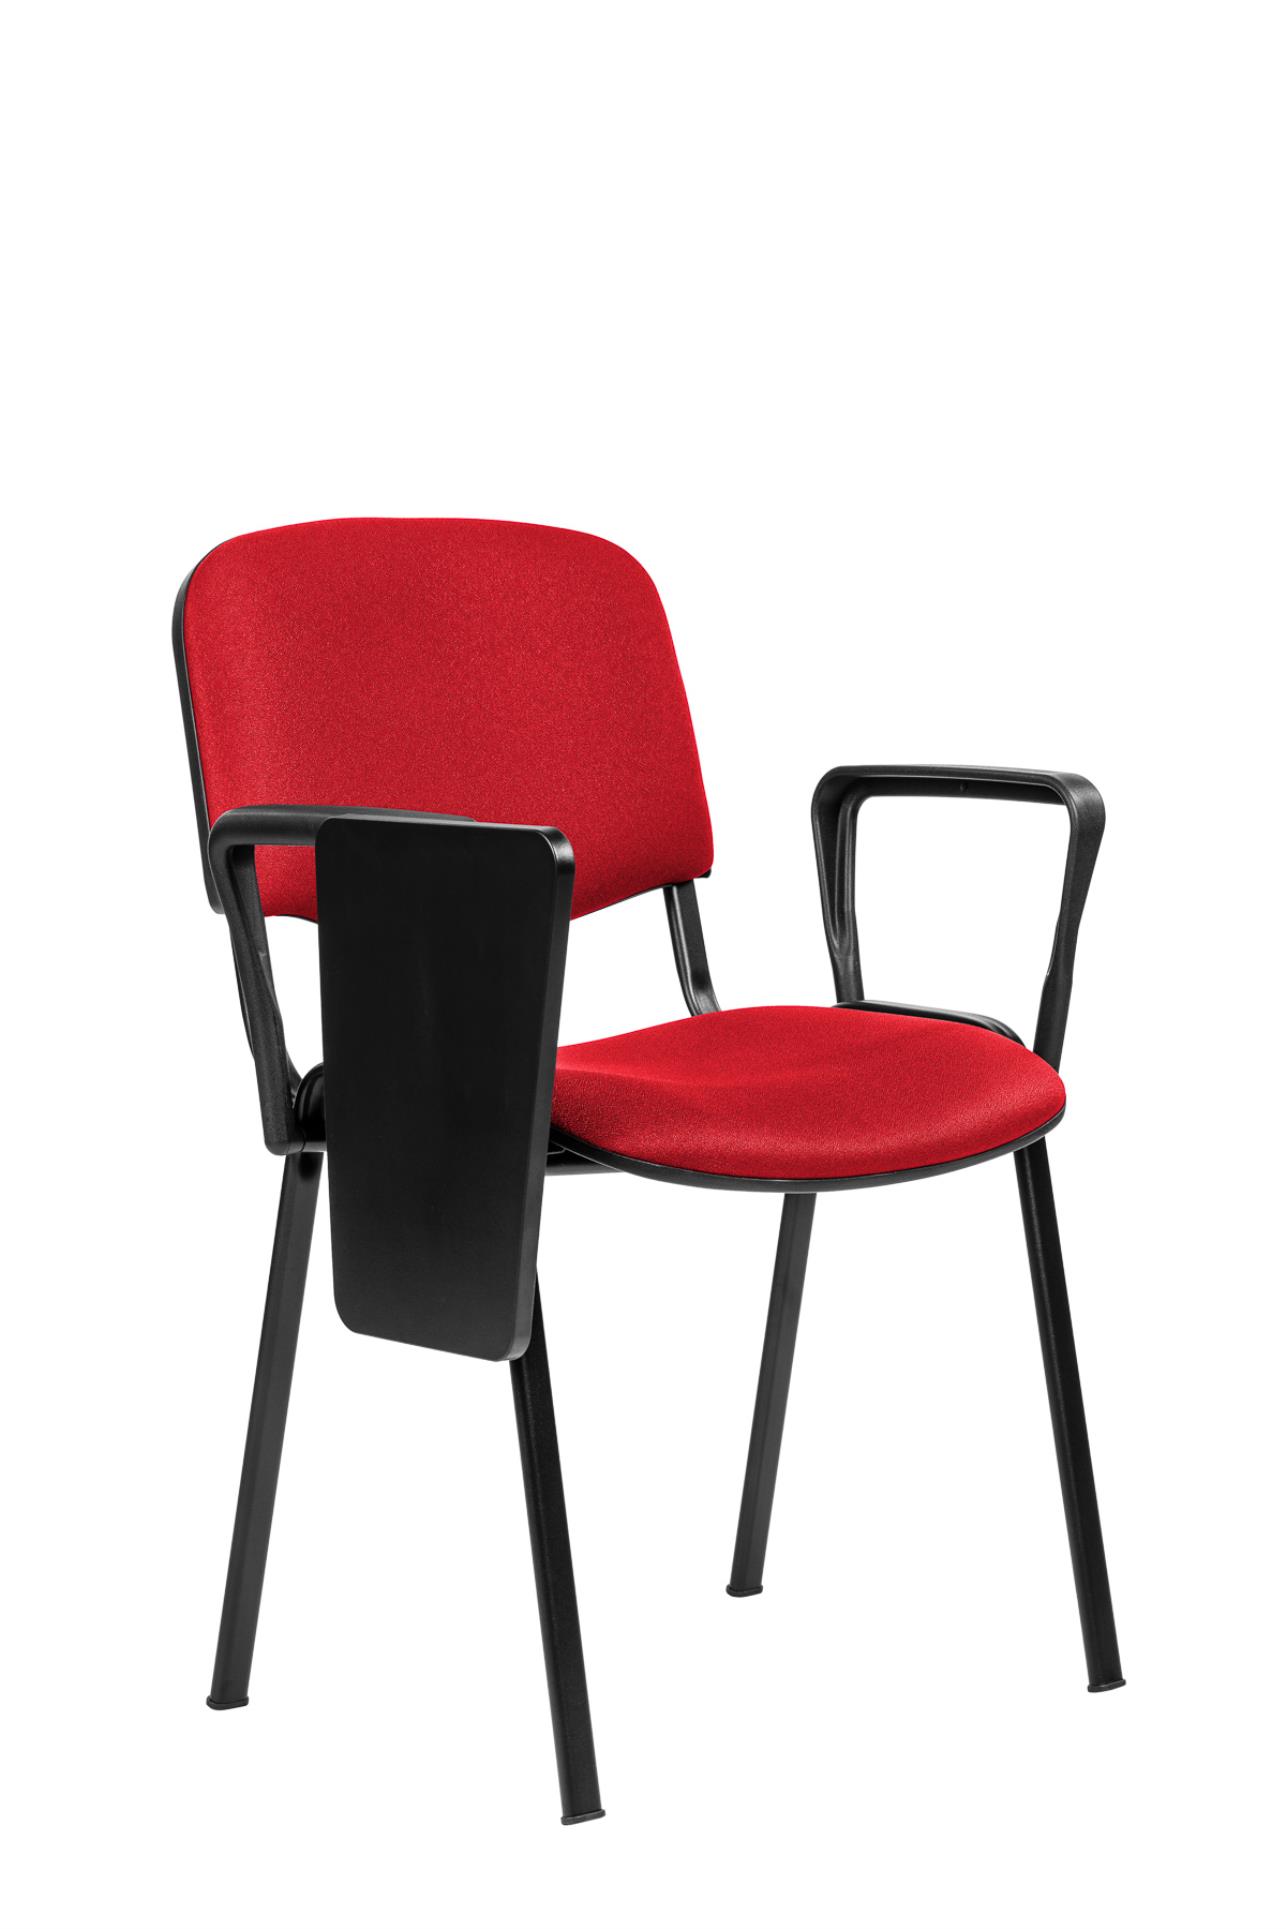 Antares Konferenční židle ISO N se sklopným stolkem - červená, kostra černá